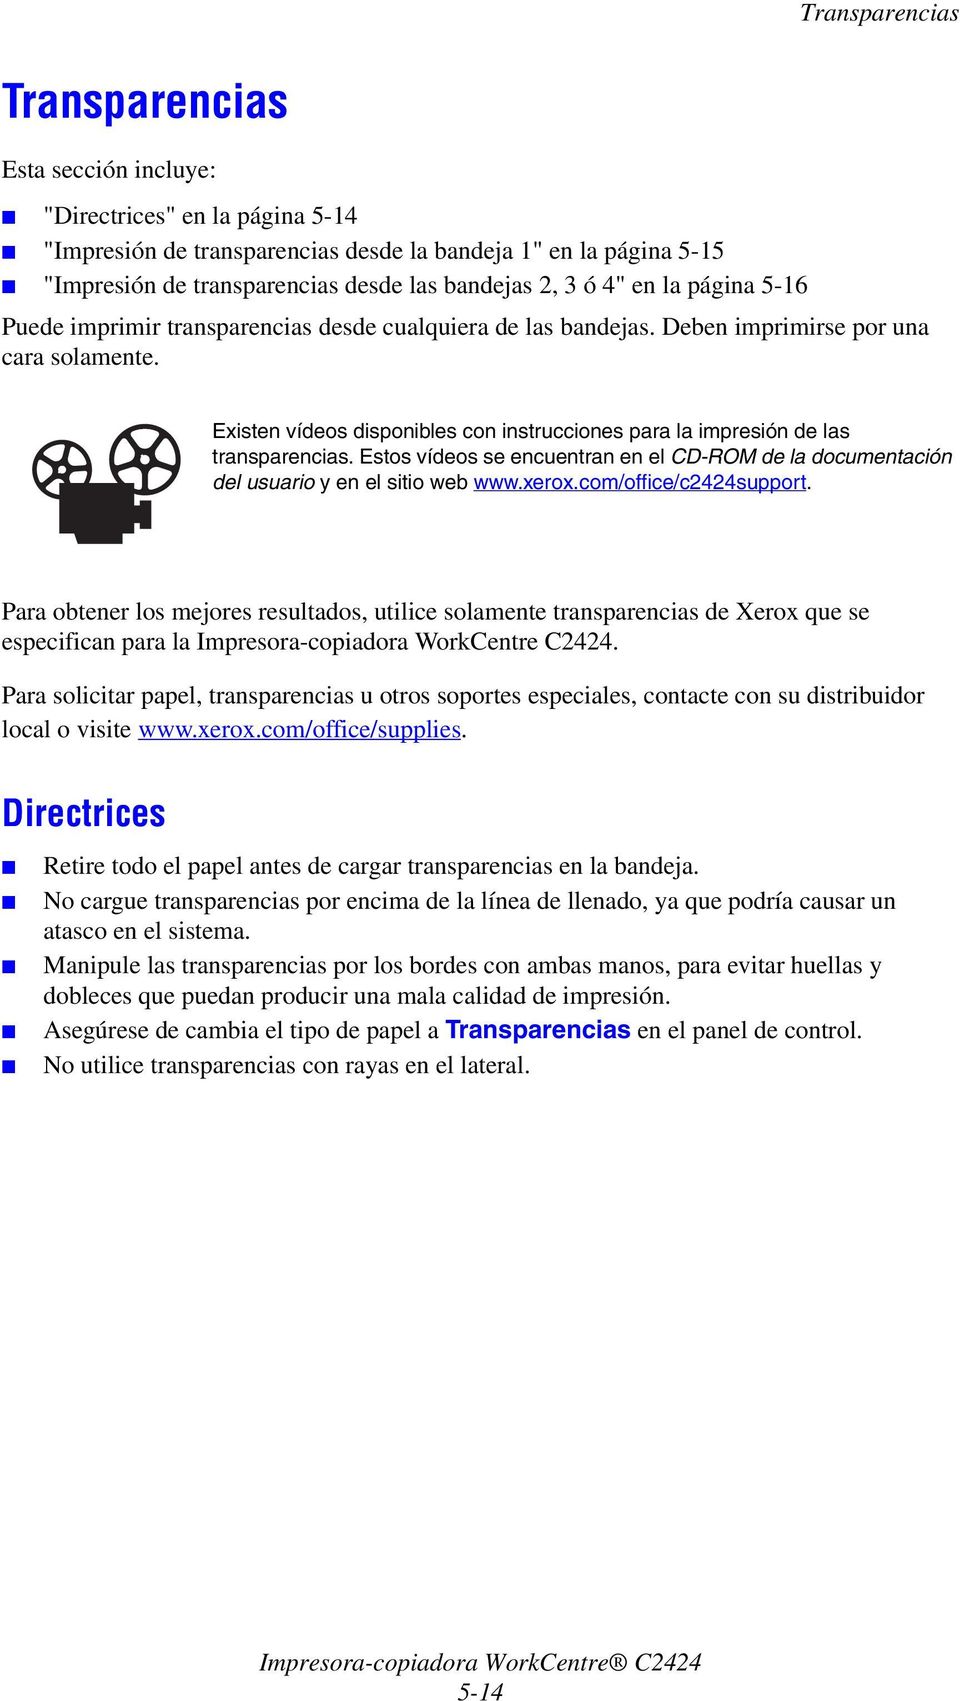 Existen vídeos disponibles con instrucciones para la impresión de las transparencias. Estos vídeos se encuentran en el CD-ROM de la documentación del usuario y en el sitio web www.xerox.